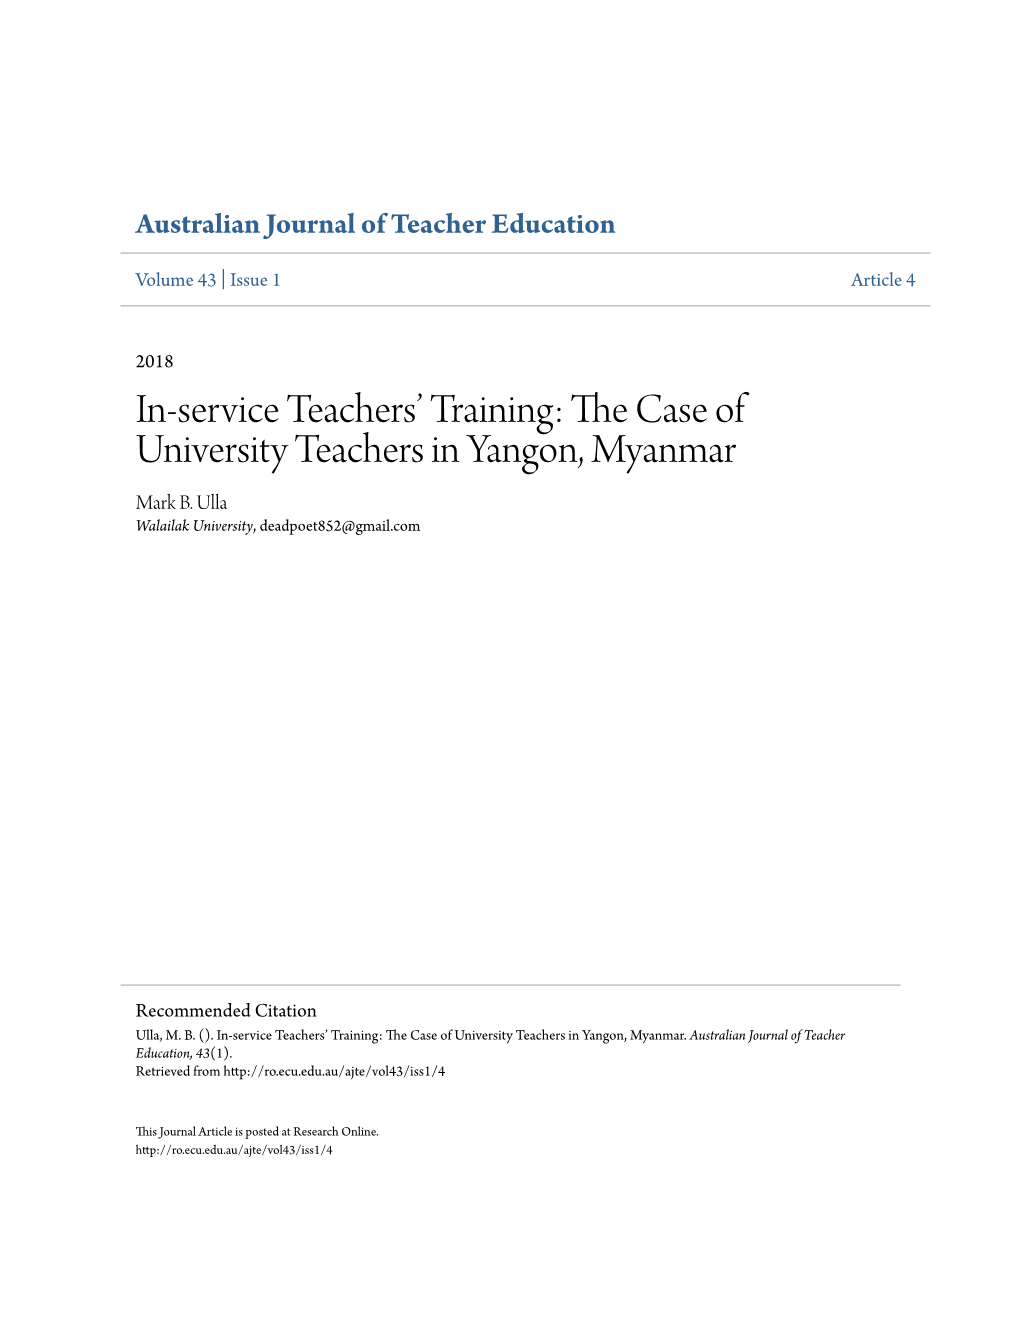 The Case of University Teachers in Yangon, Myanmar